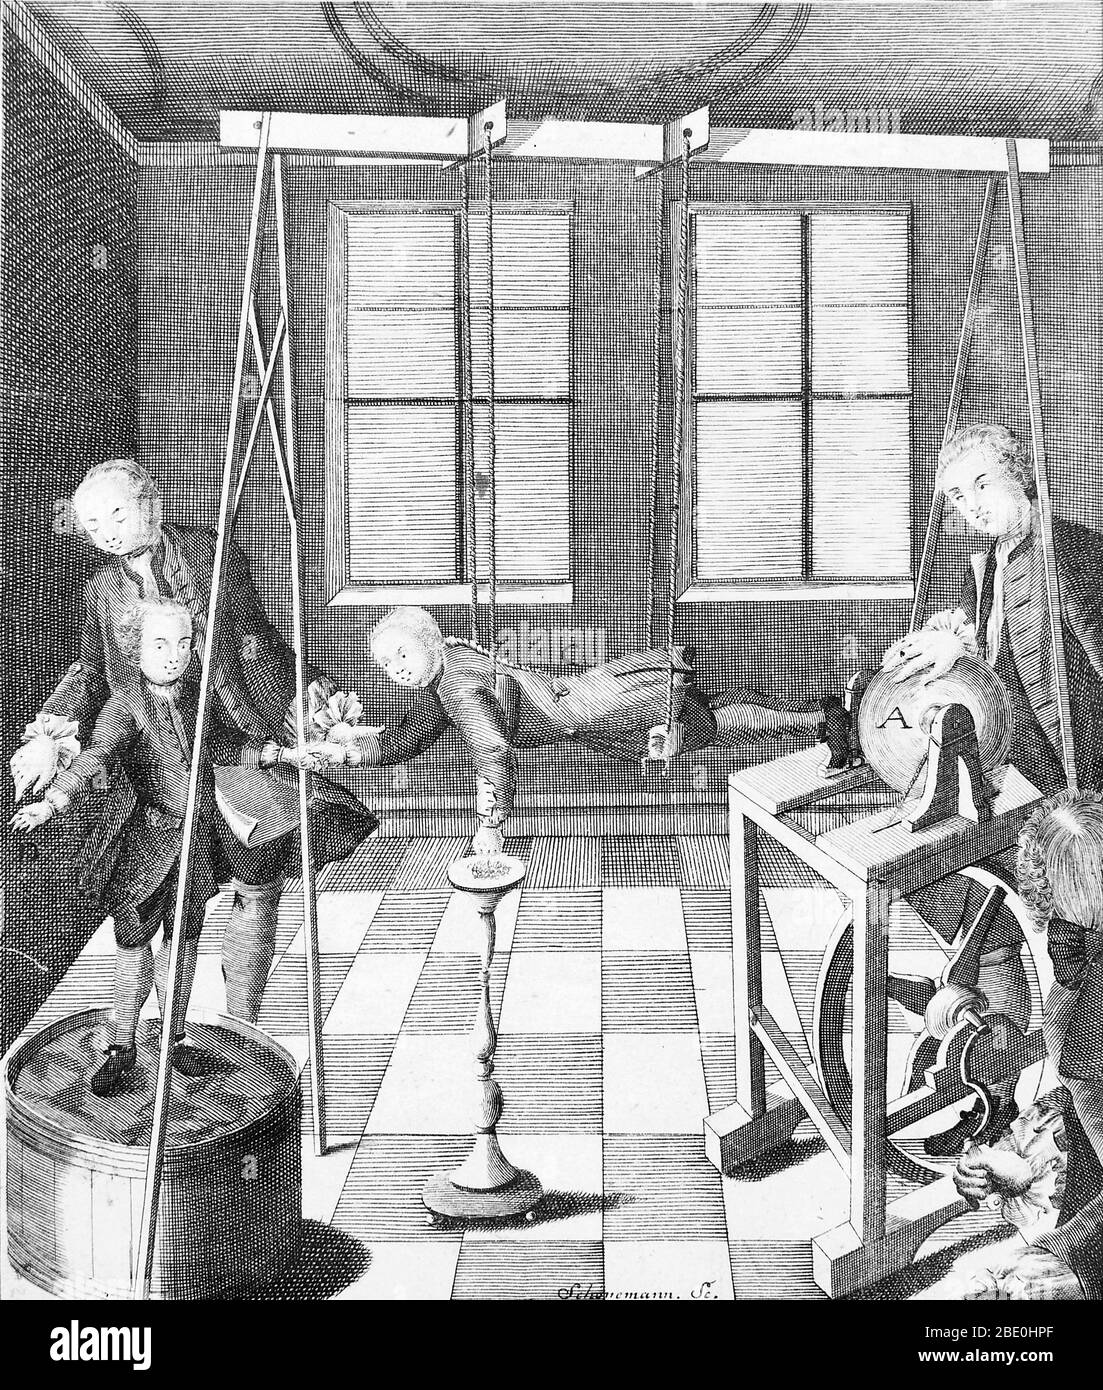 La machine électrique de Christian August Hausen, 1743. Le garçon suspendu des cordes de soie agit comme une sorte de conducteur principal. De la "Novi profectus" de Hausen dans historia electricitatis. Hausen (1693-1743) était un mathématicien allemand connu pour ses recherches sur l'électricité, en particulier en utilisant un générateur triboélectrique. Le générateur de Hausen était semblable à des générateurs antérieurs, comme celui de Francis Hauksbee. Il se composait d'un globe en verre pivoté par un cordon et une grande roue. Un assistant a frotté le globe avec sa main pour produire de l'électricité statique. Le livre de Hausen décrit son générateur et Banque D'Images